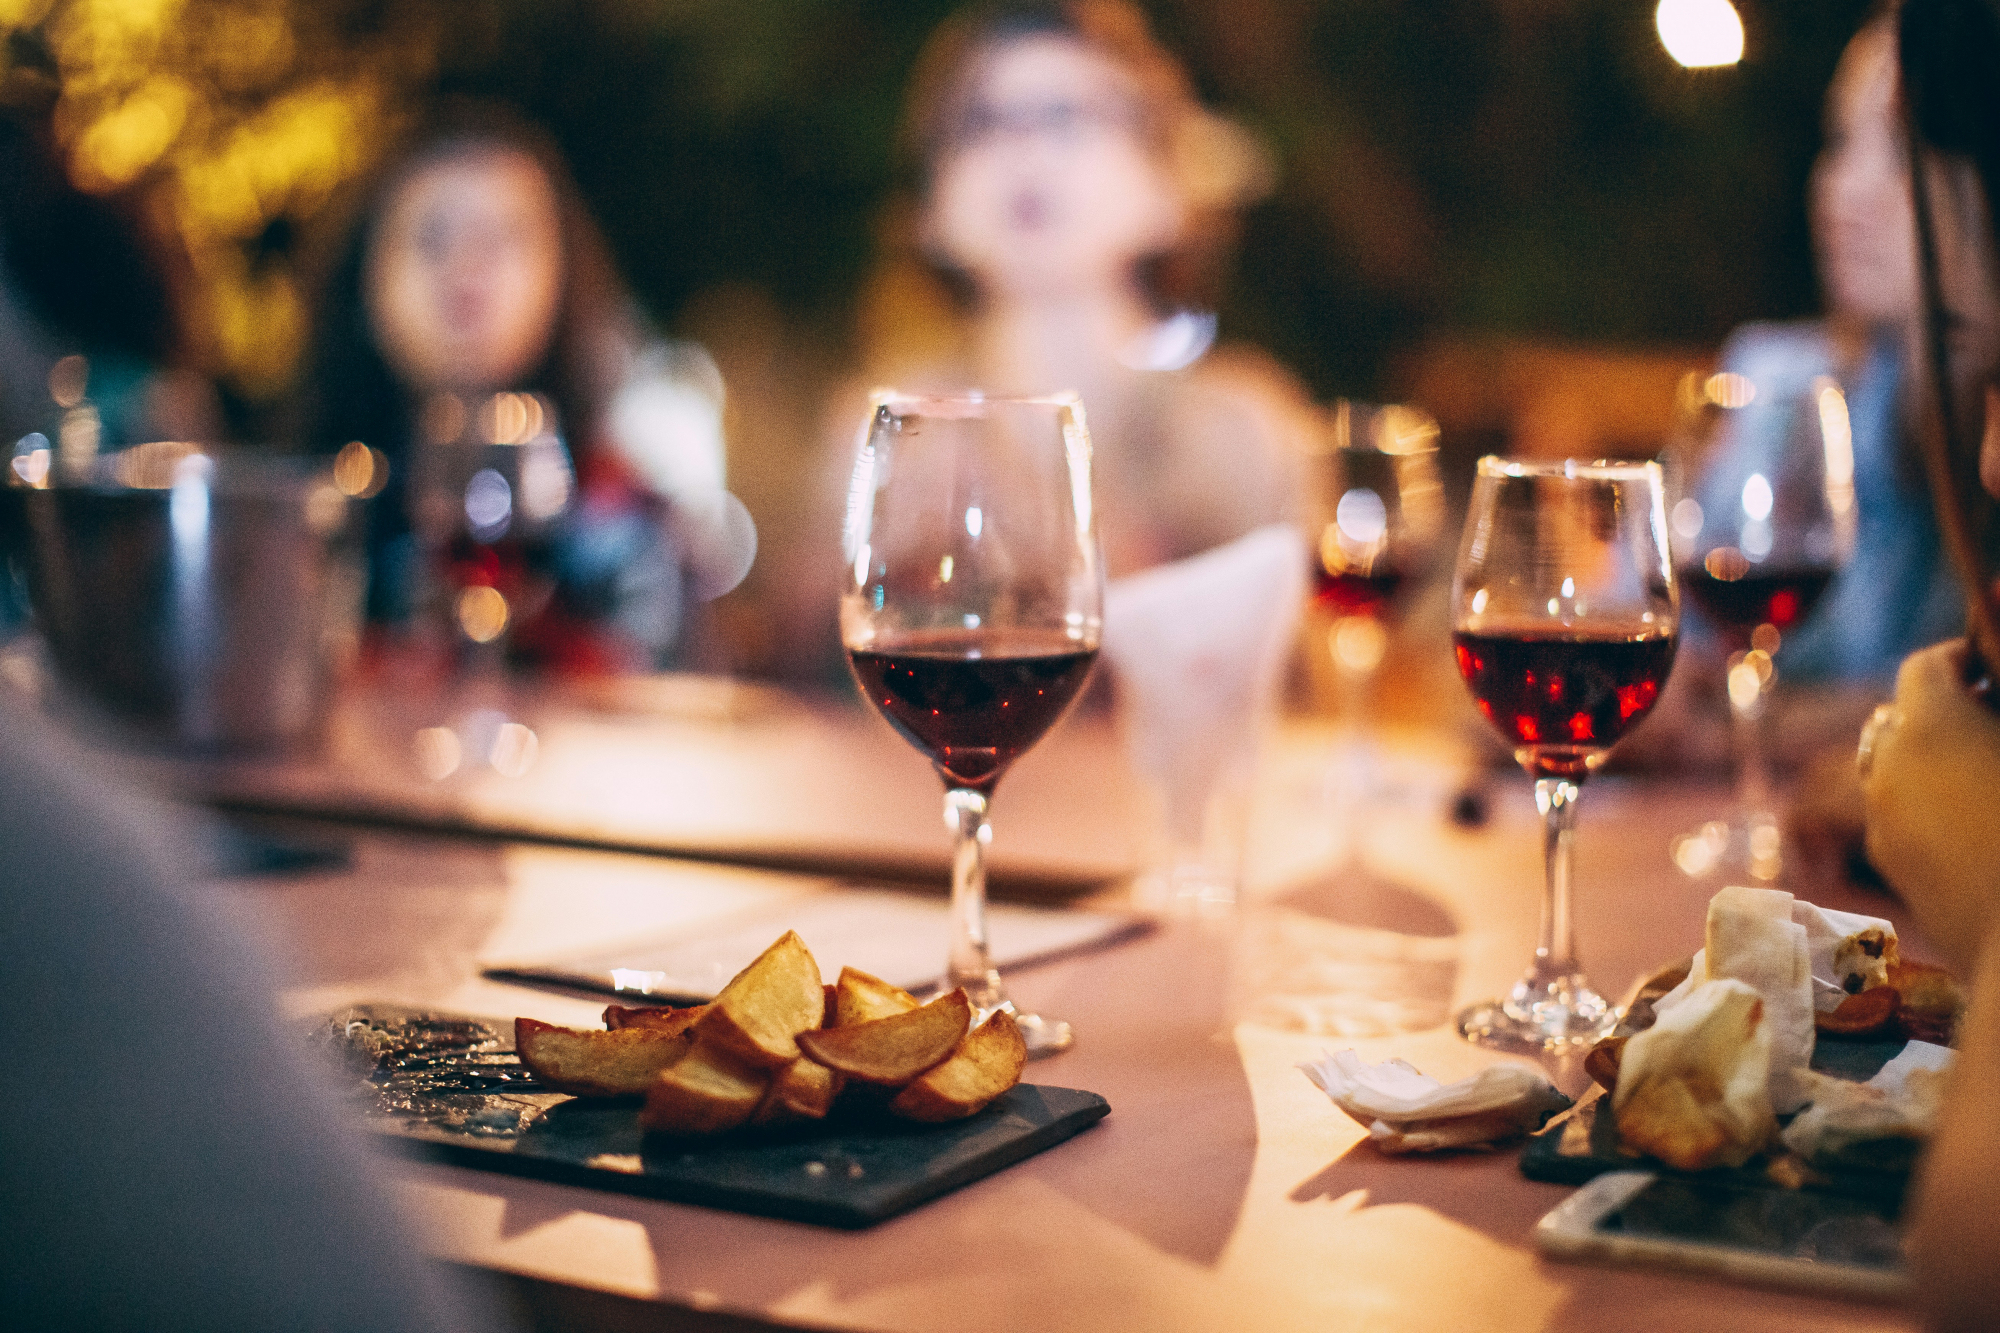 découvrez notre sélection de vins rouges de qualité, parfaits pour accompagner vos repas et savourer de délicieux moments de convivialité.